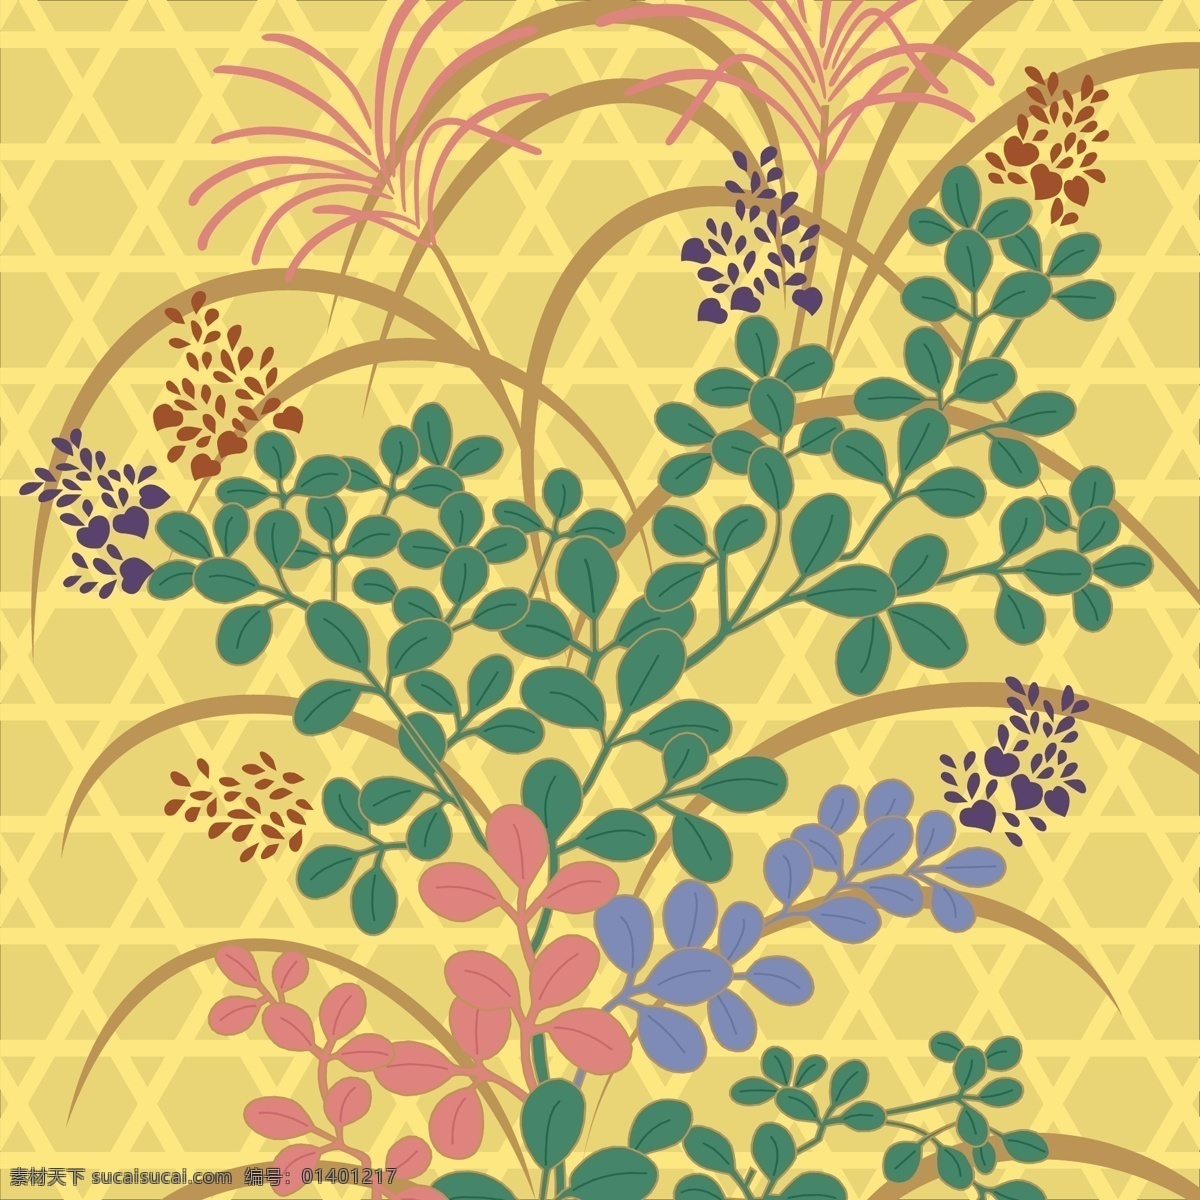 日本 传统 图案 花卉 花纹 模板 设计稿 素材元素 小草 植物 源文件 矢量图